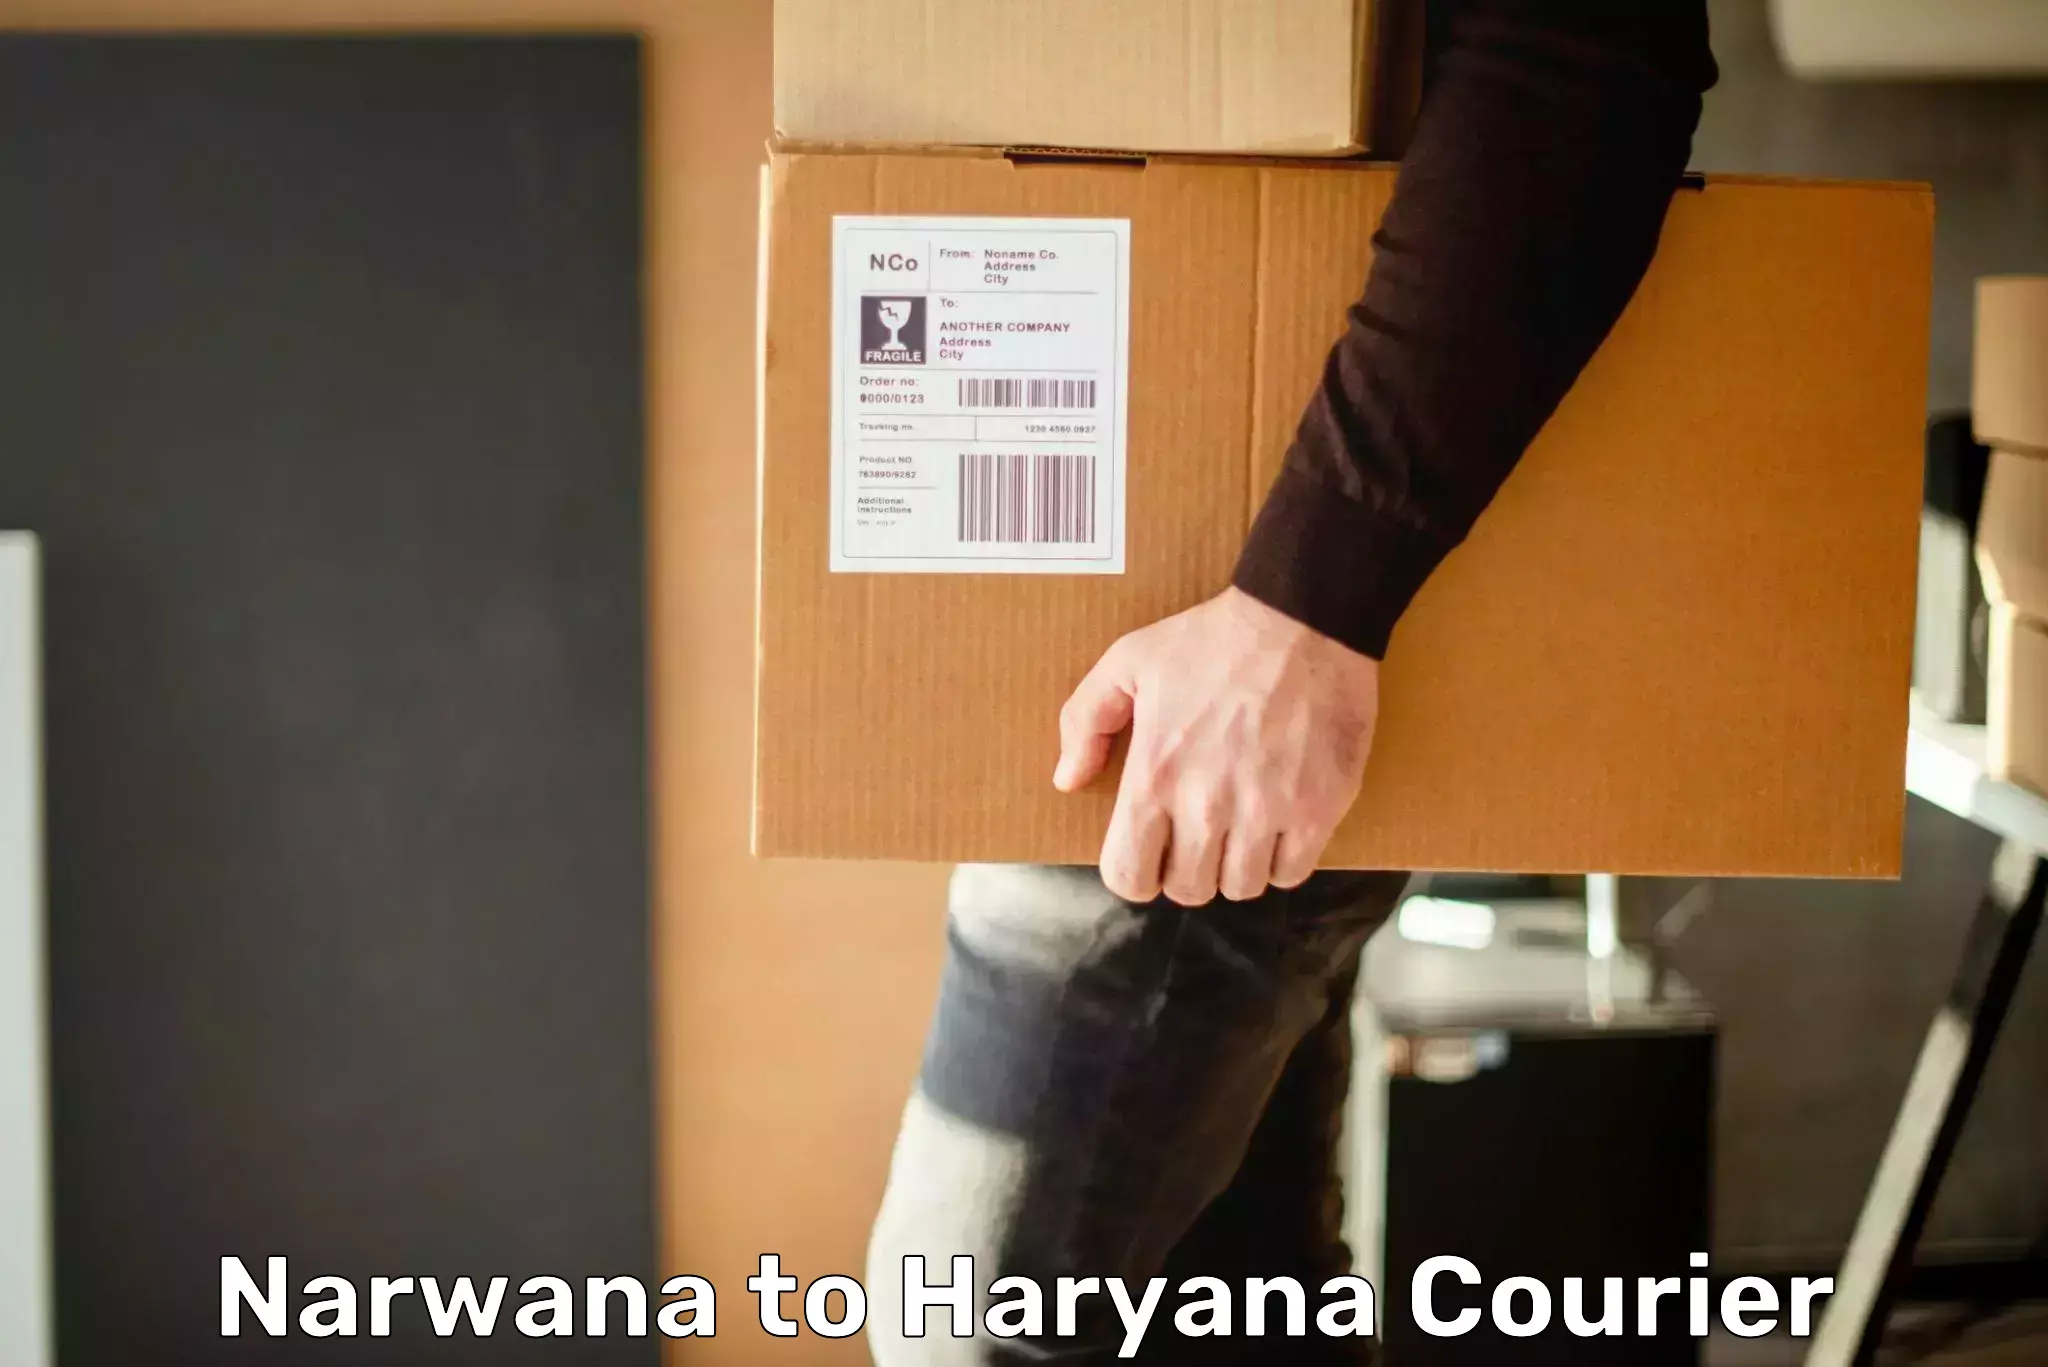 Advanced shipping services Narwana to Haryana